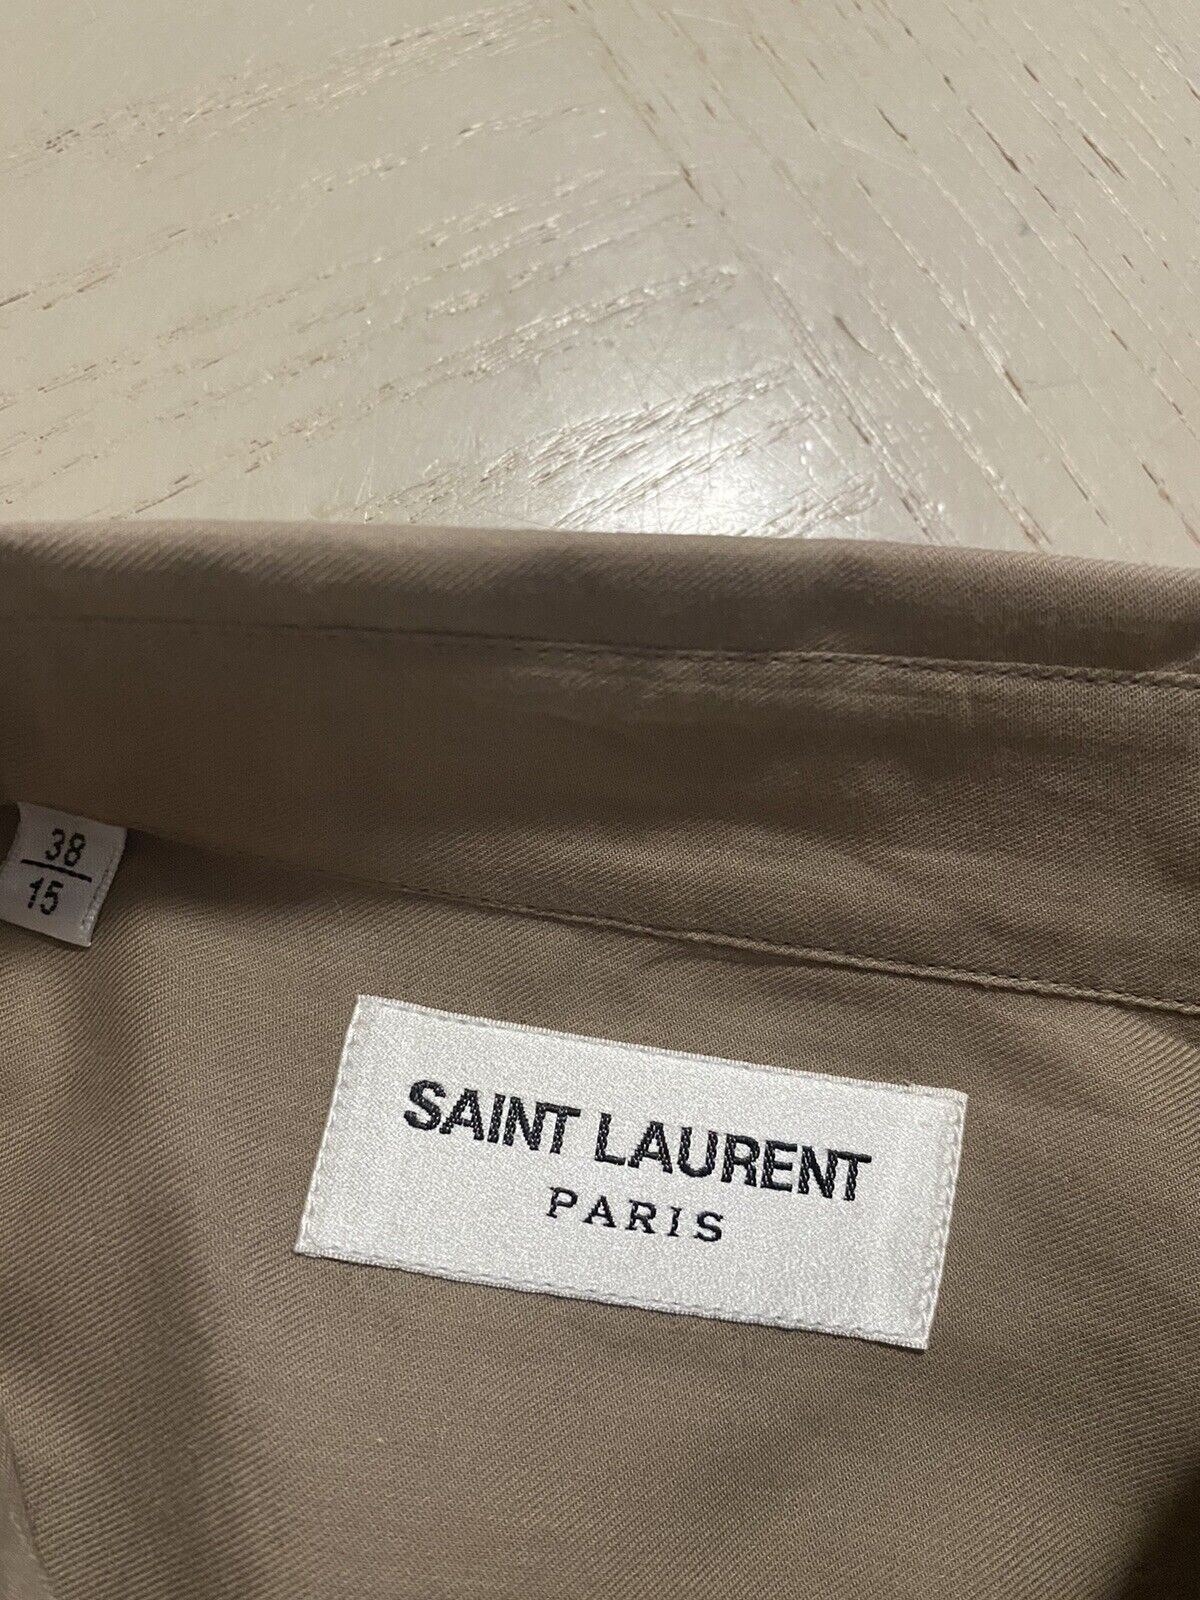 NWT $1190 Saint Laurent Men’s Shirt Beige S ( 38/15 ) Italy